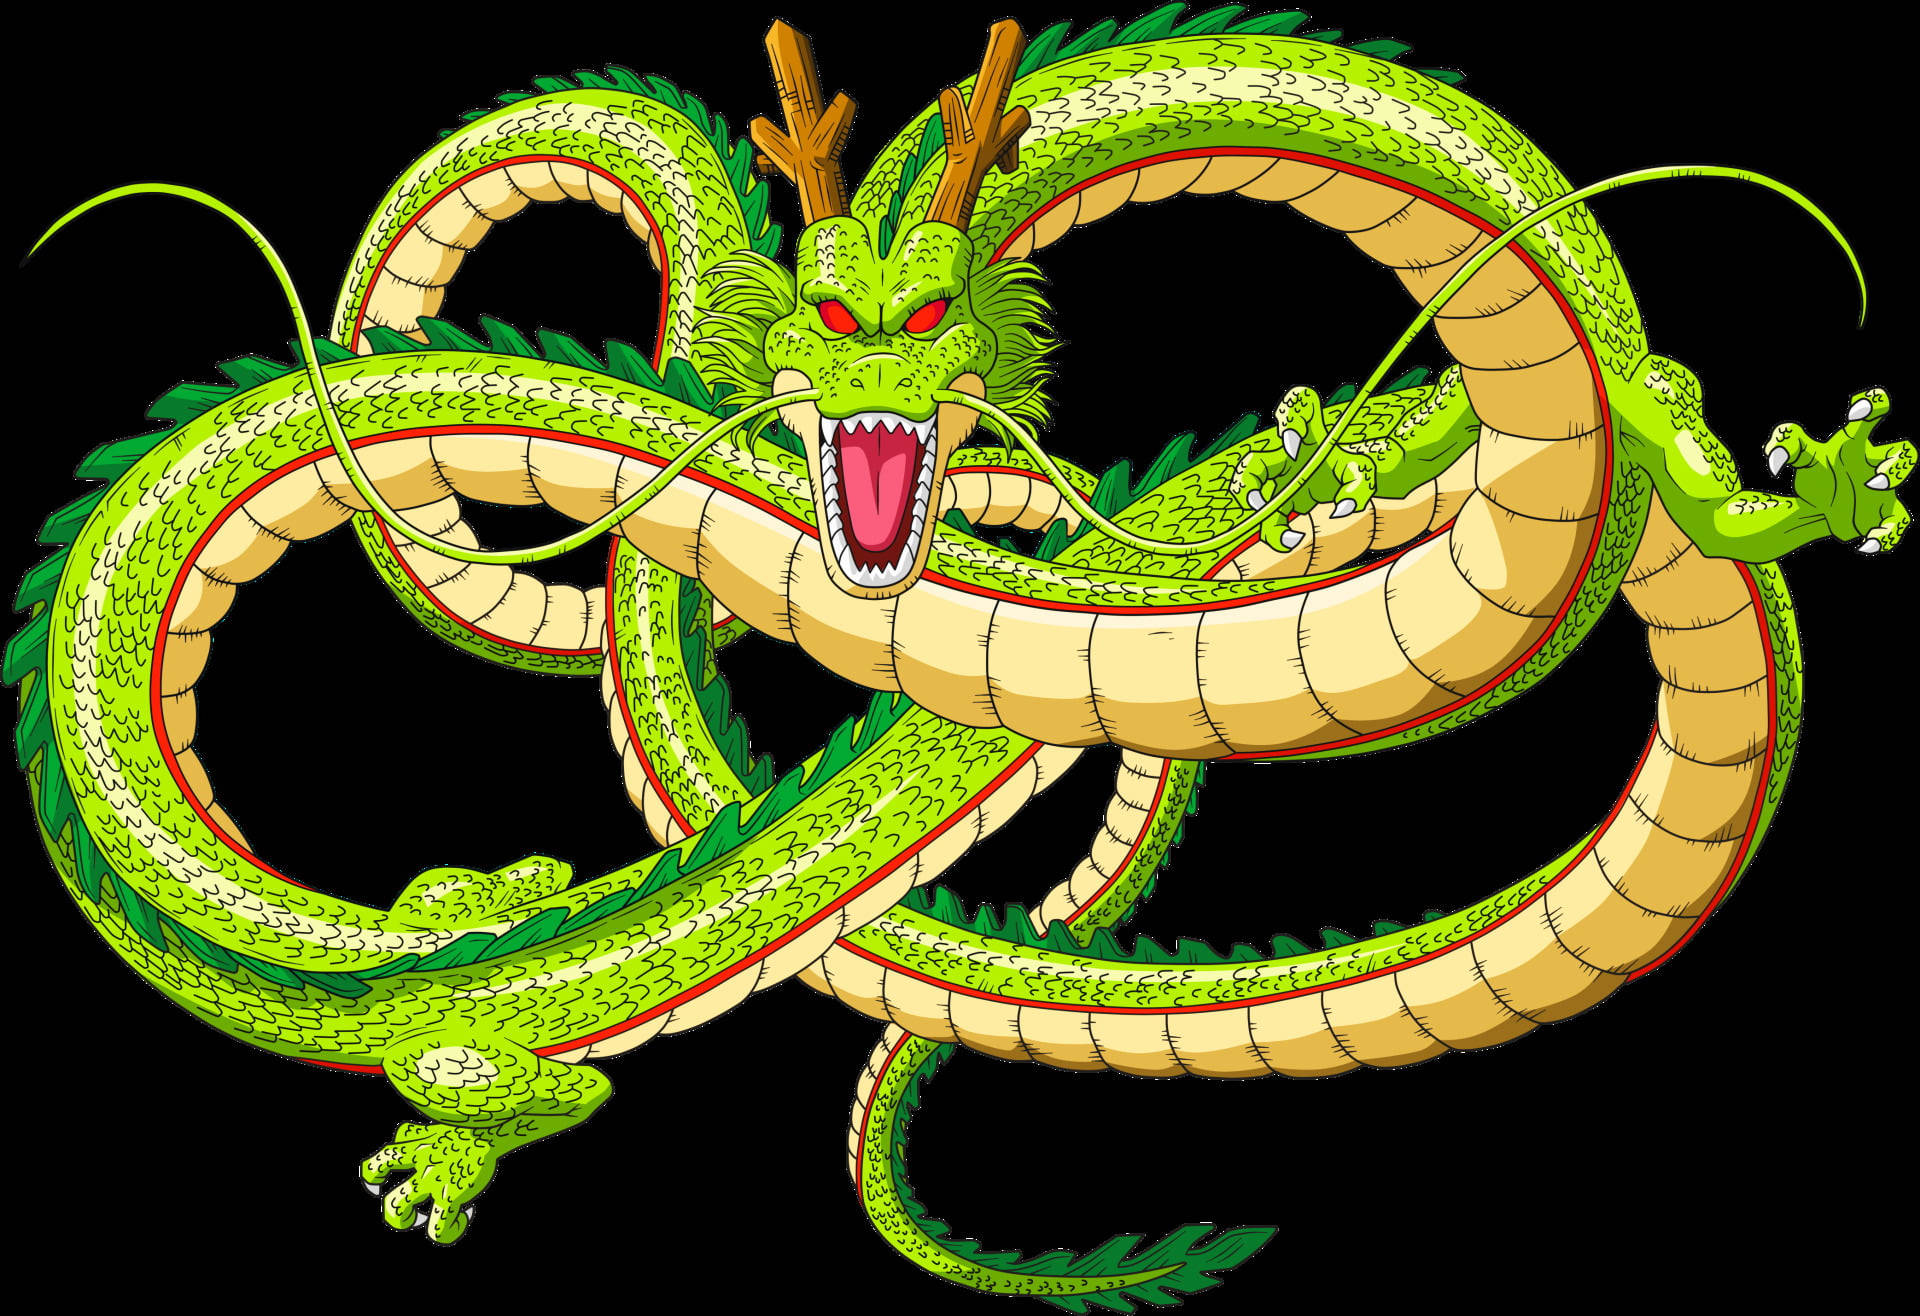 Shenron The Green Dragon